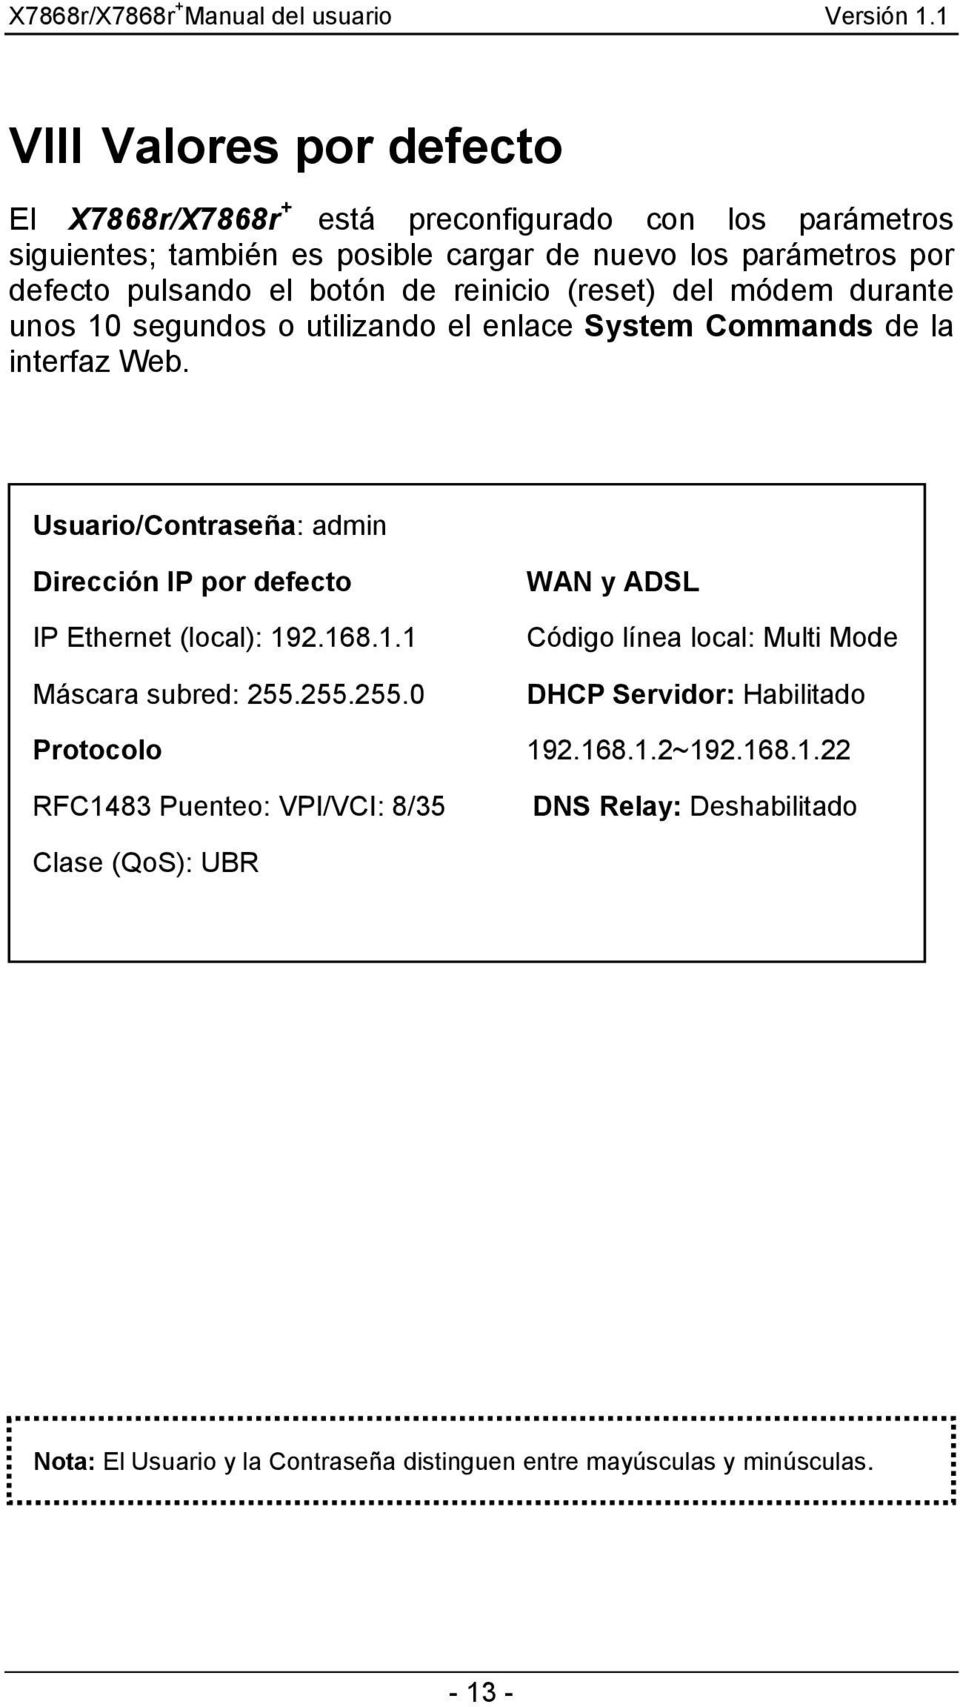 Usuario/Contraseña: admin Dirección IP por defecto IP Ethernet (local): 192.168.1.1 Máscara subred: 255.